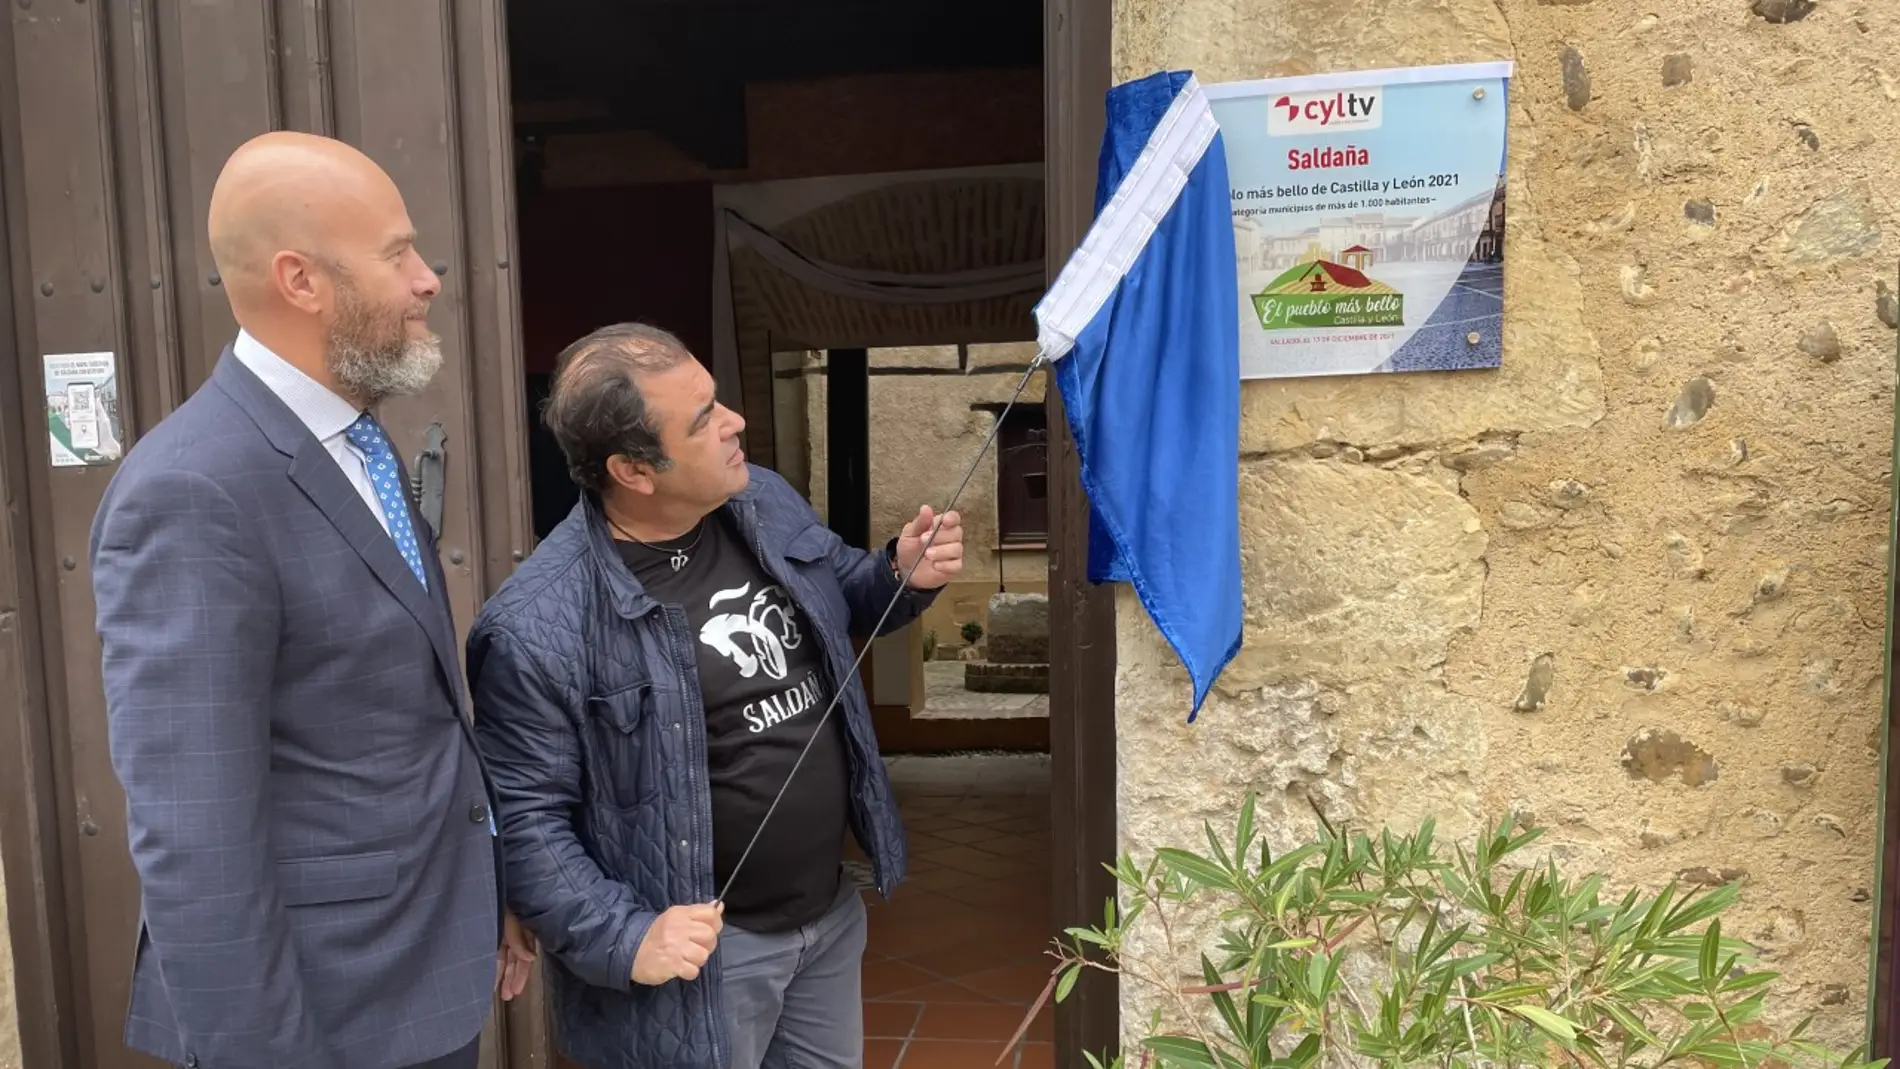 Saldaña descubre la placas que le acreditan como ‘El pueblo más bello de Castilla y León’ 2021